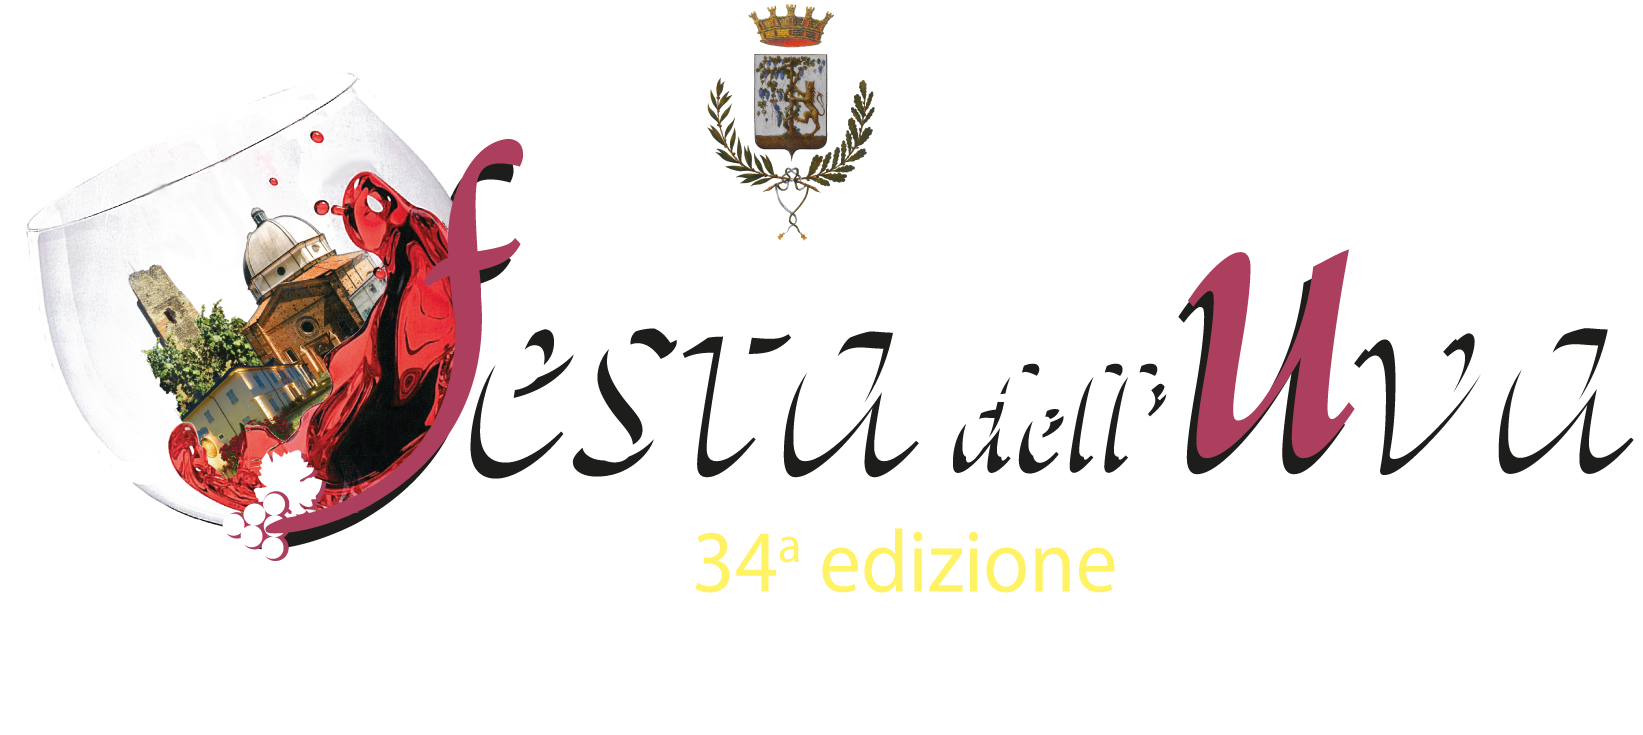 Anche quest’anno Gattinara ci delizierà con la sua 34° Festa dell’Uva